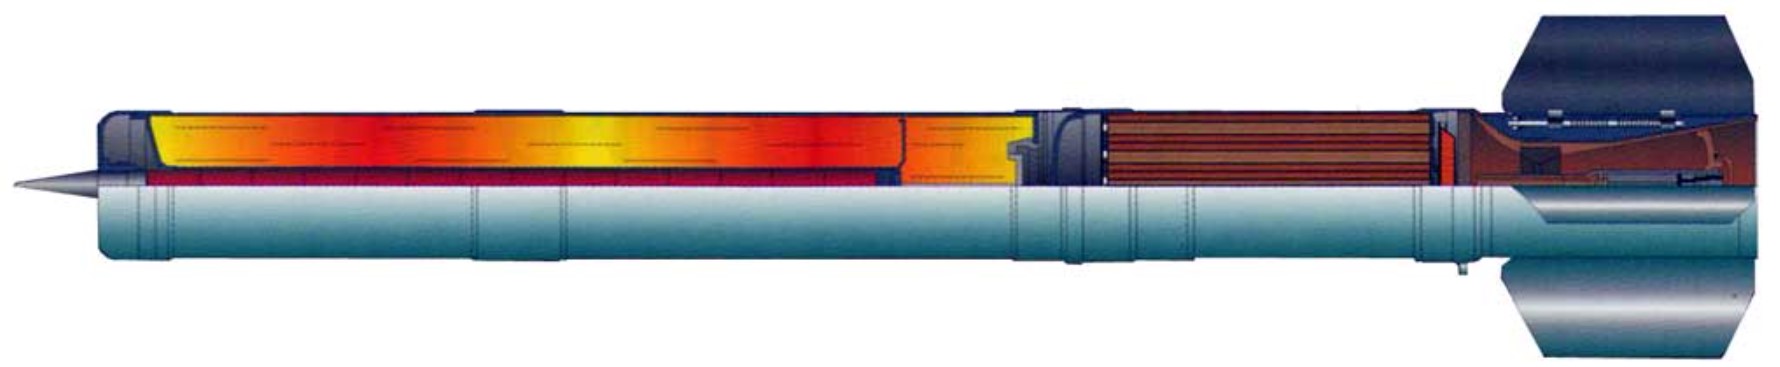 Некерований реактивний снаряд МО.1.01.04М для ТОС-1